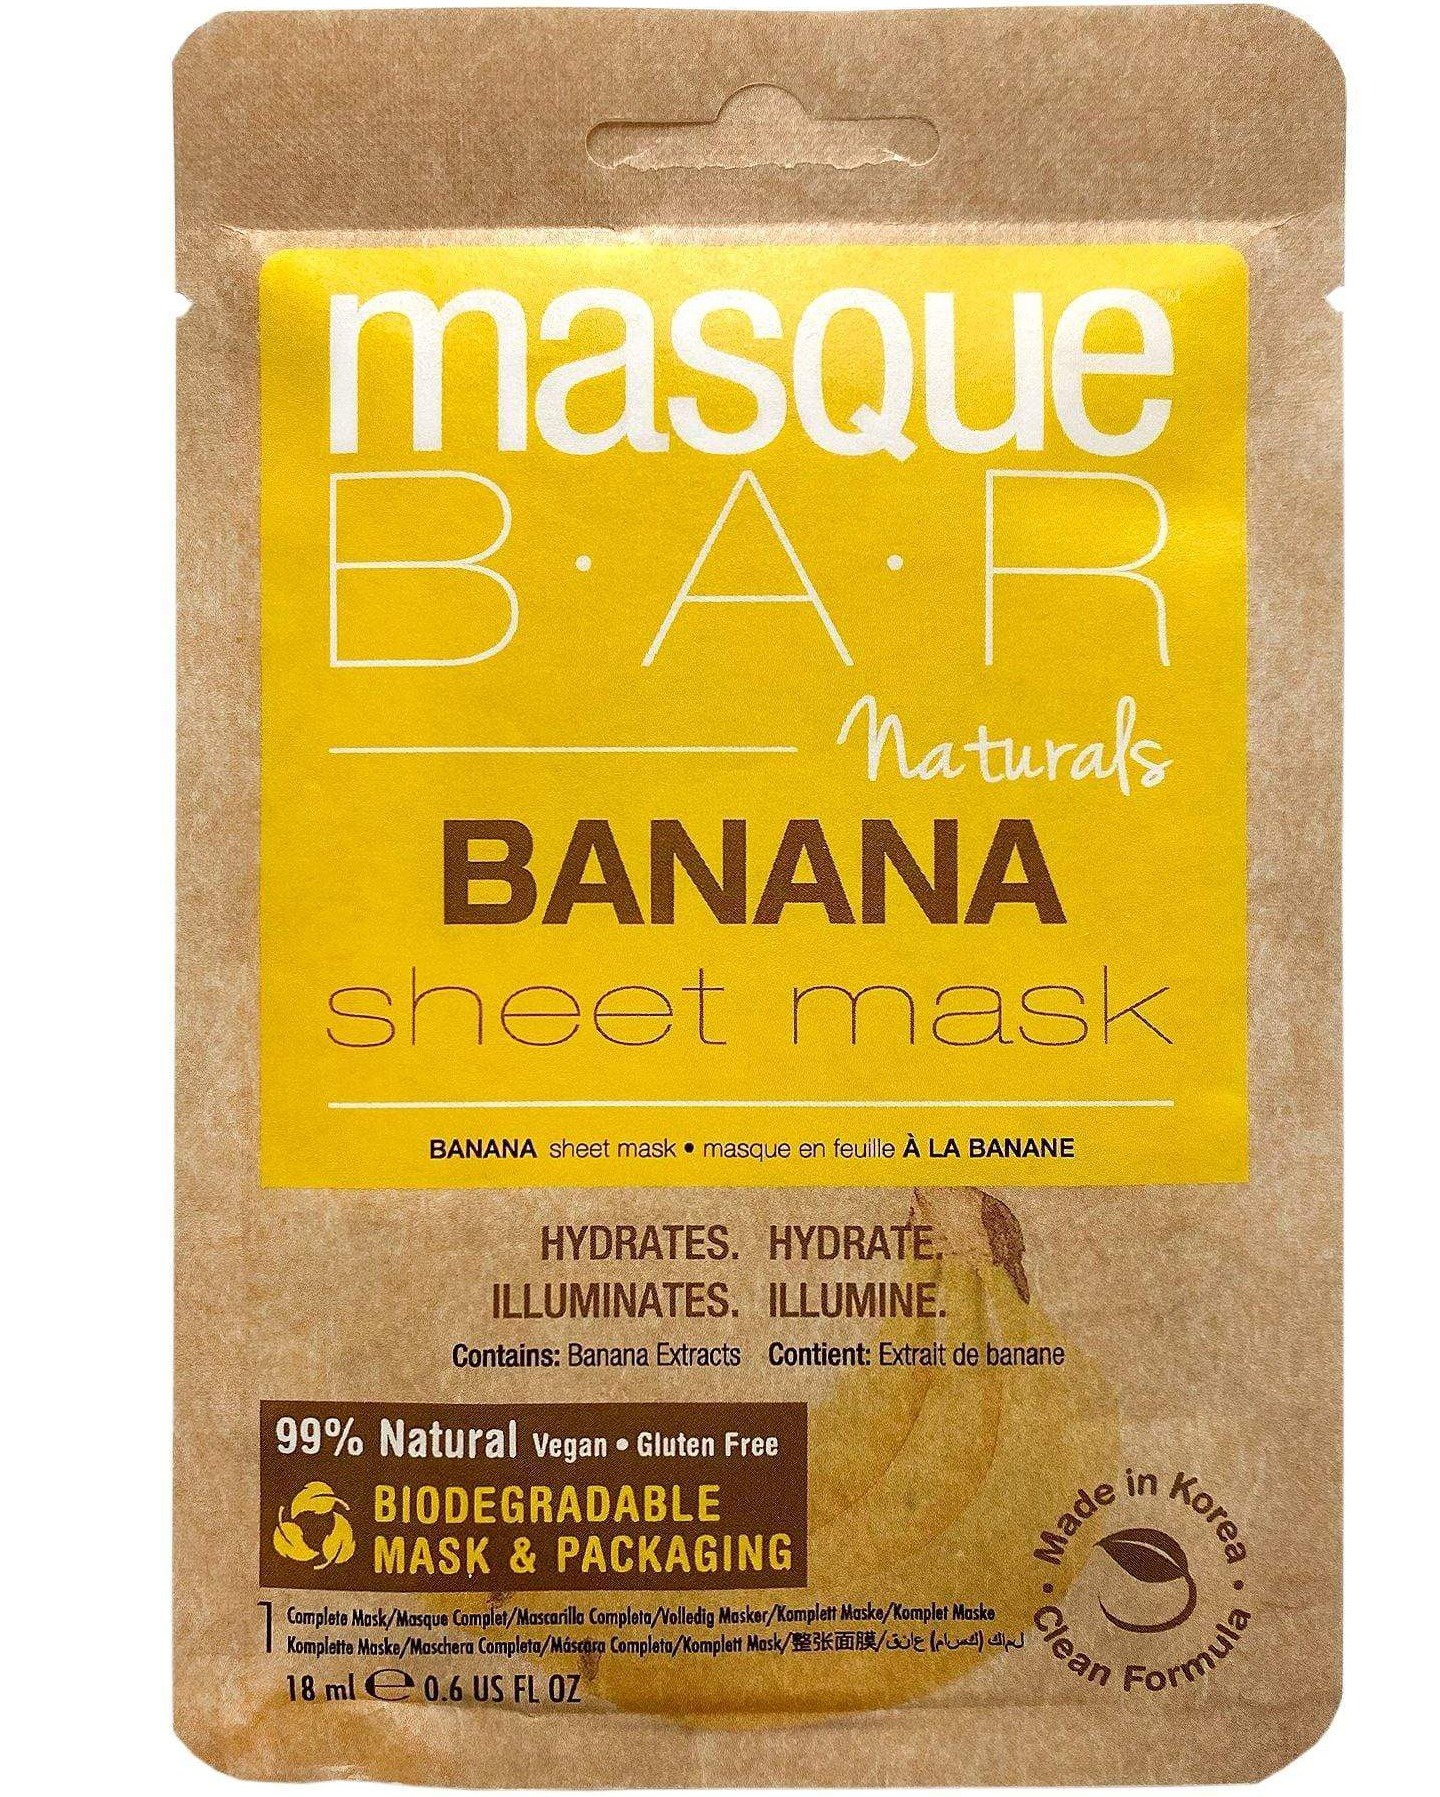 MasqueBAR Naturals Banana Sheet Mask